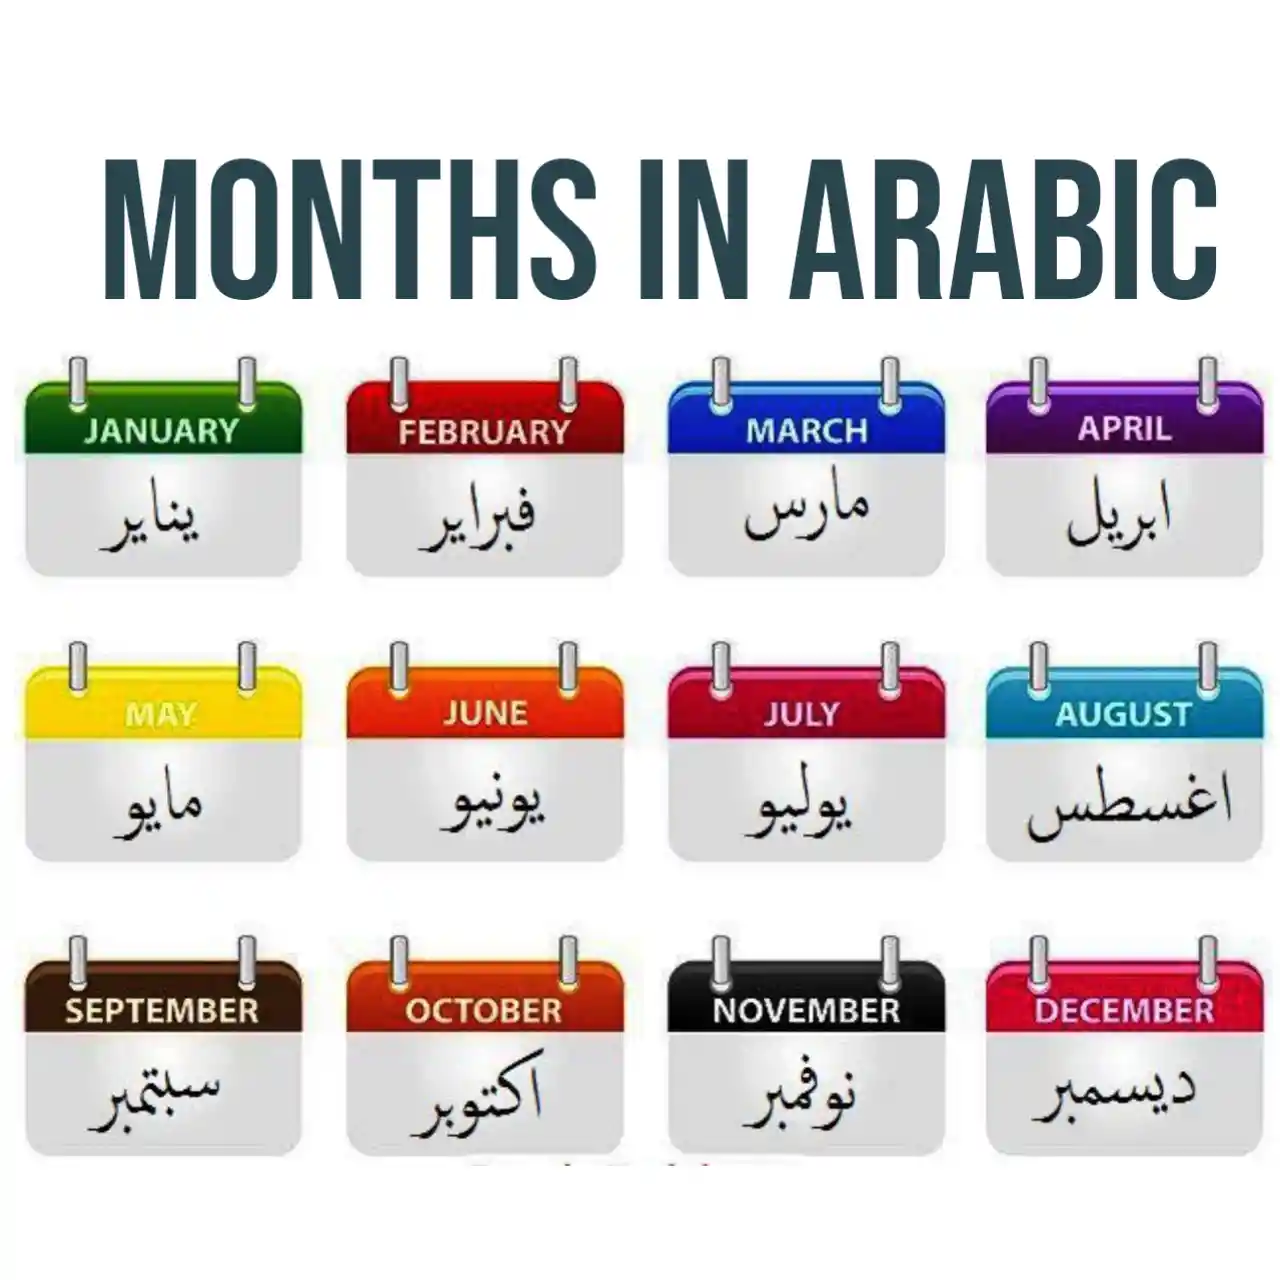 Months in Arabic